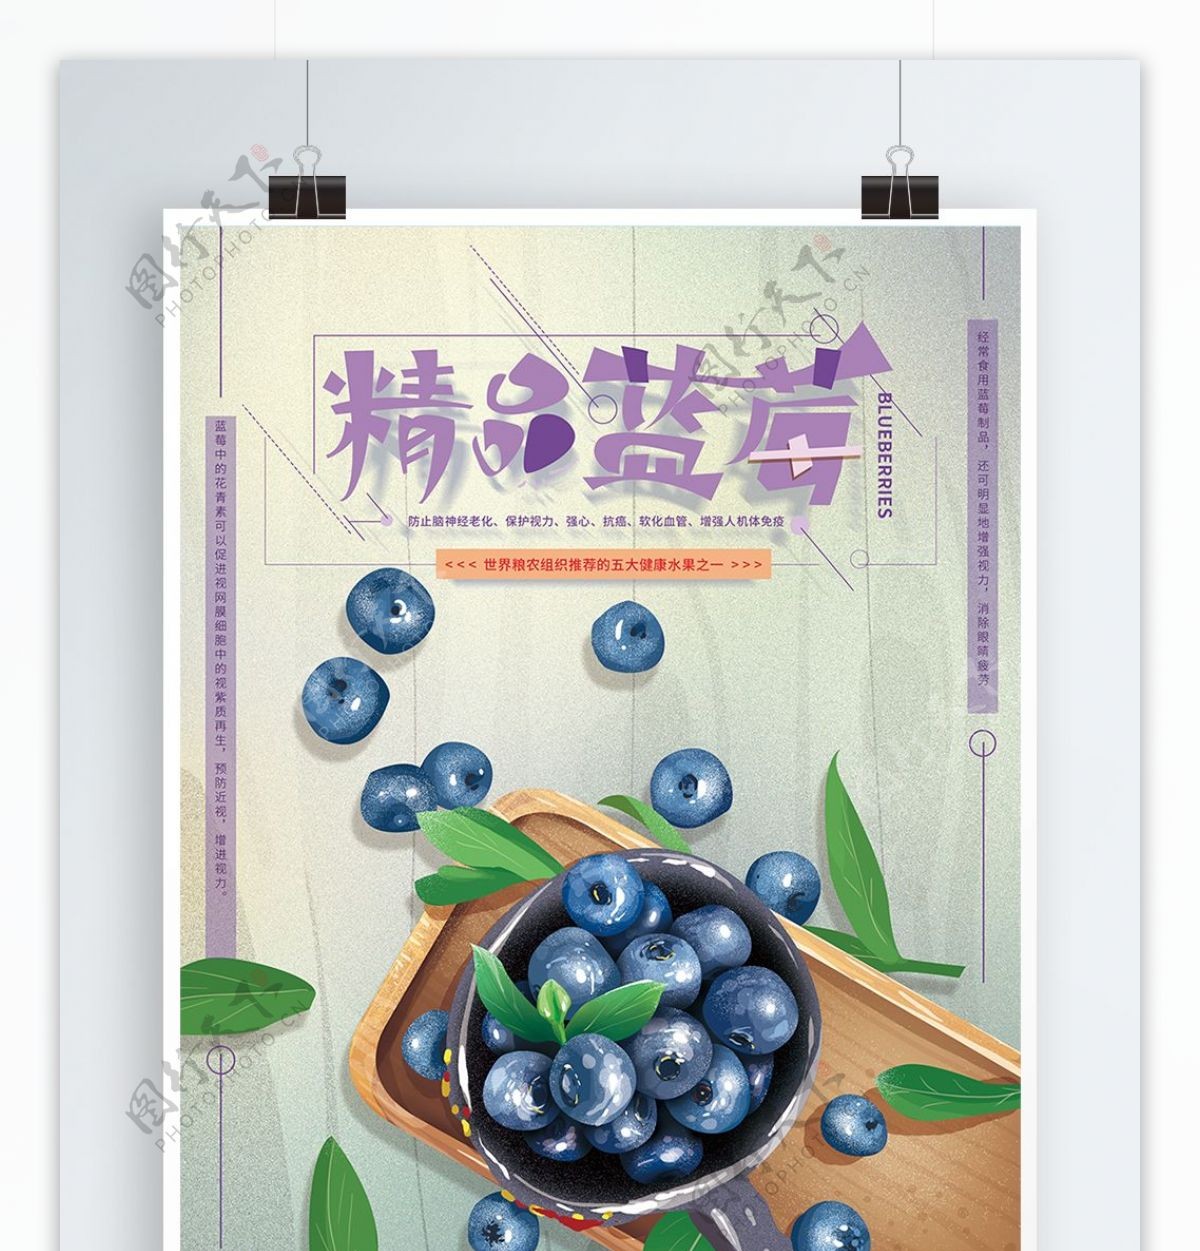 原创手绘清新精品蓝莓海报